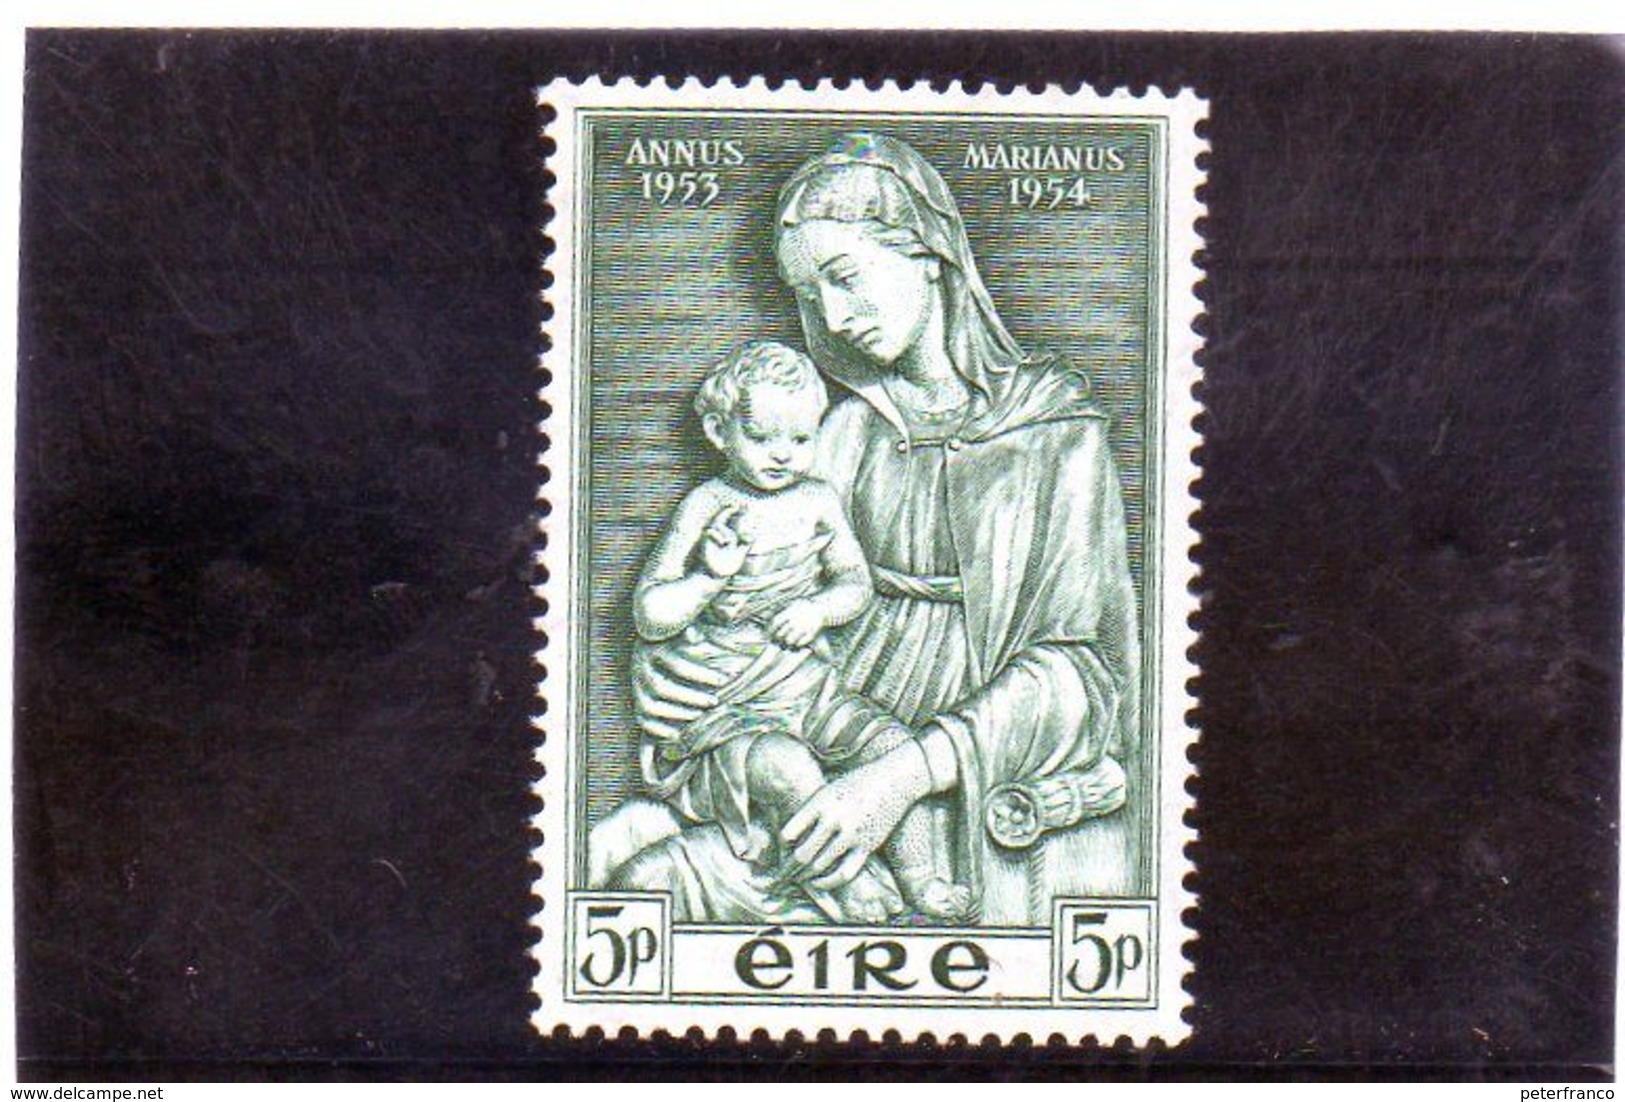 CG44 - 1954 Irlanda - Anno Mariano - Neufs